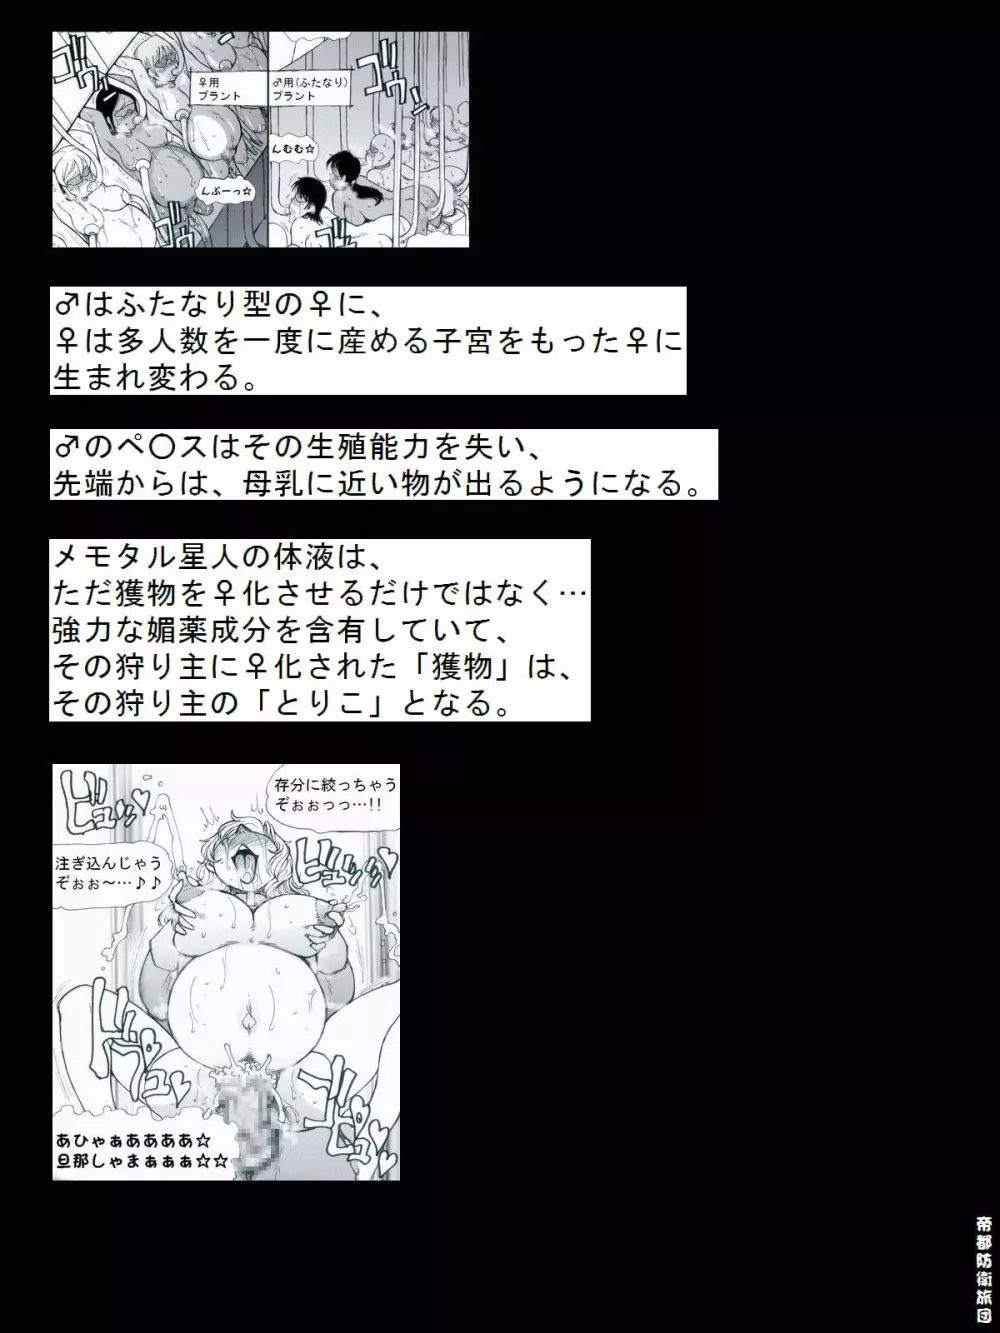 [帝都防衛旅団] RTKBOOK 9-3 「M○Xいぢり(3) 『PANPAN-MAN』」 - page28